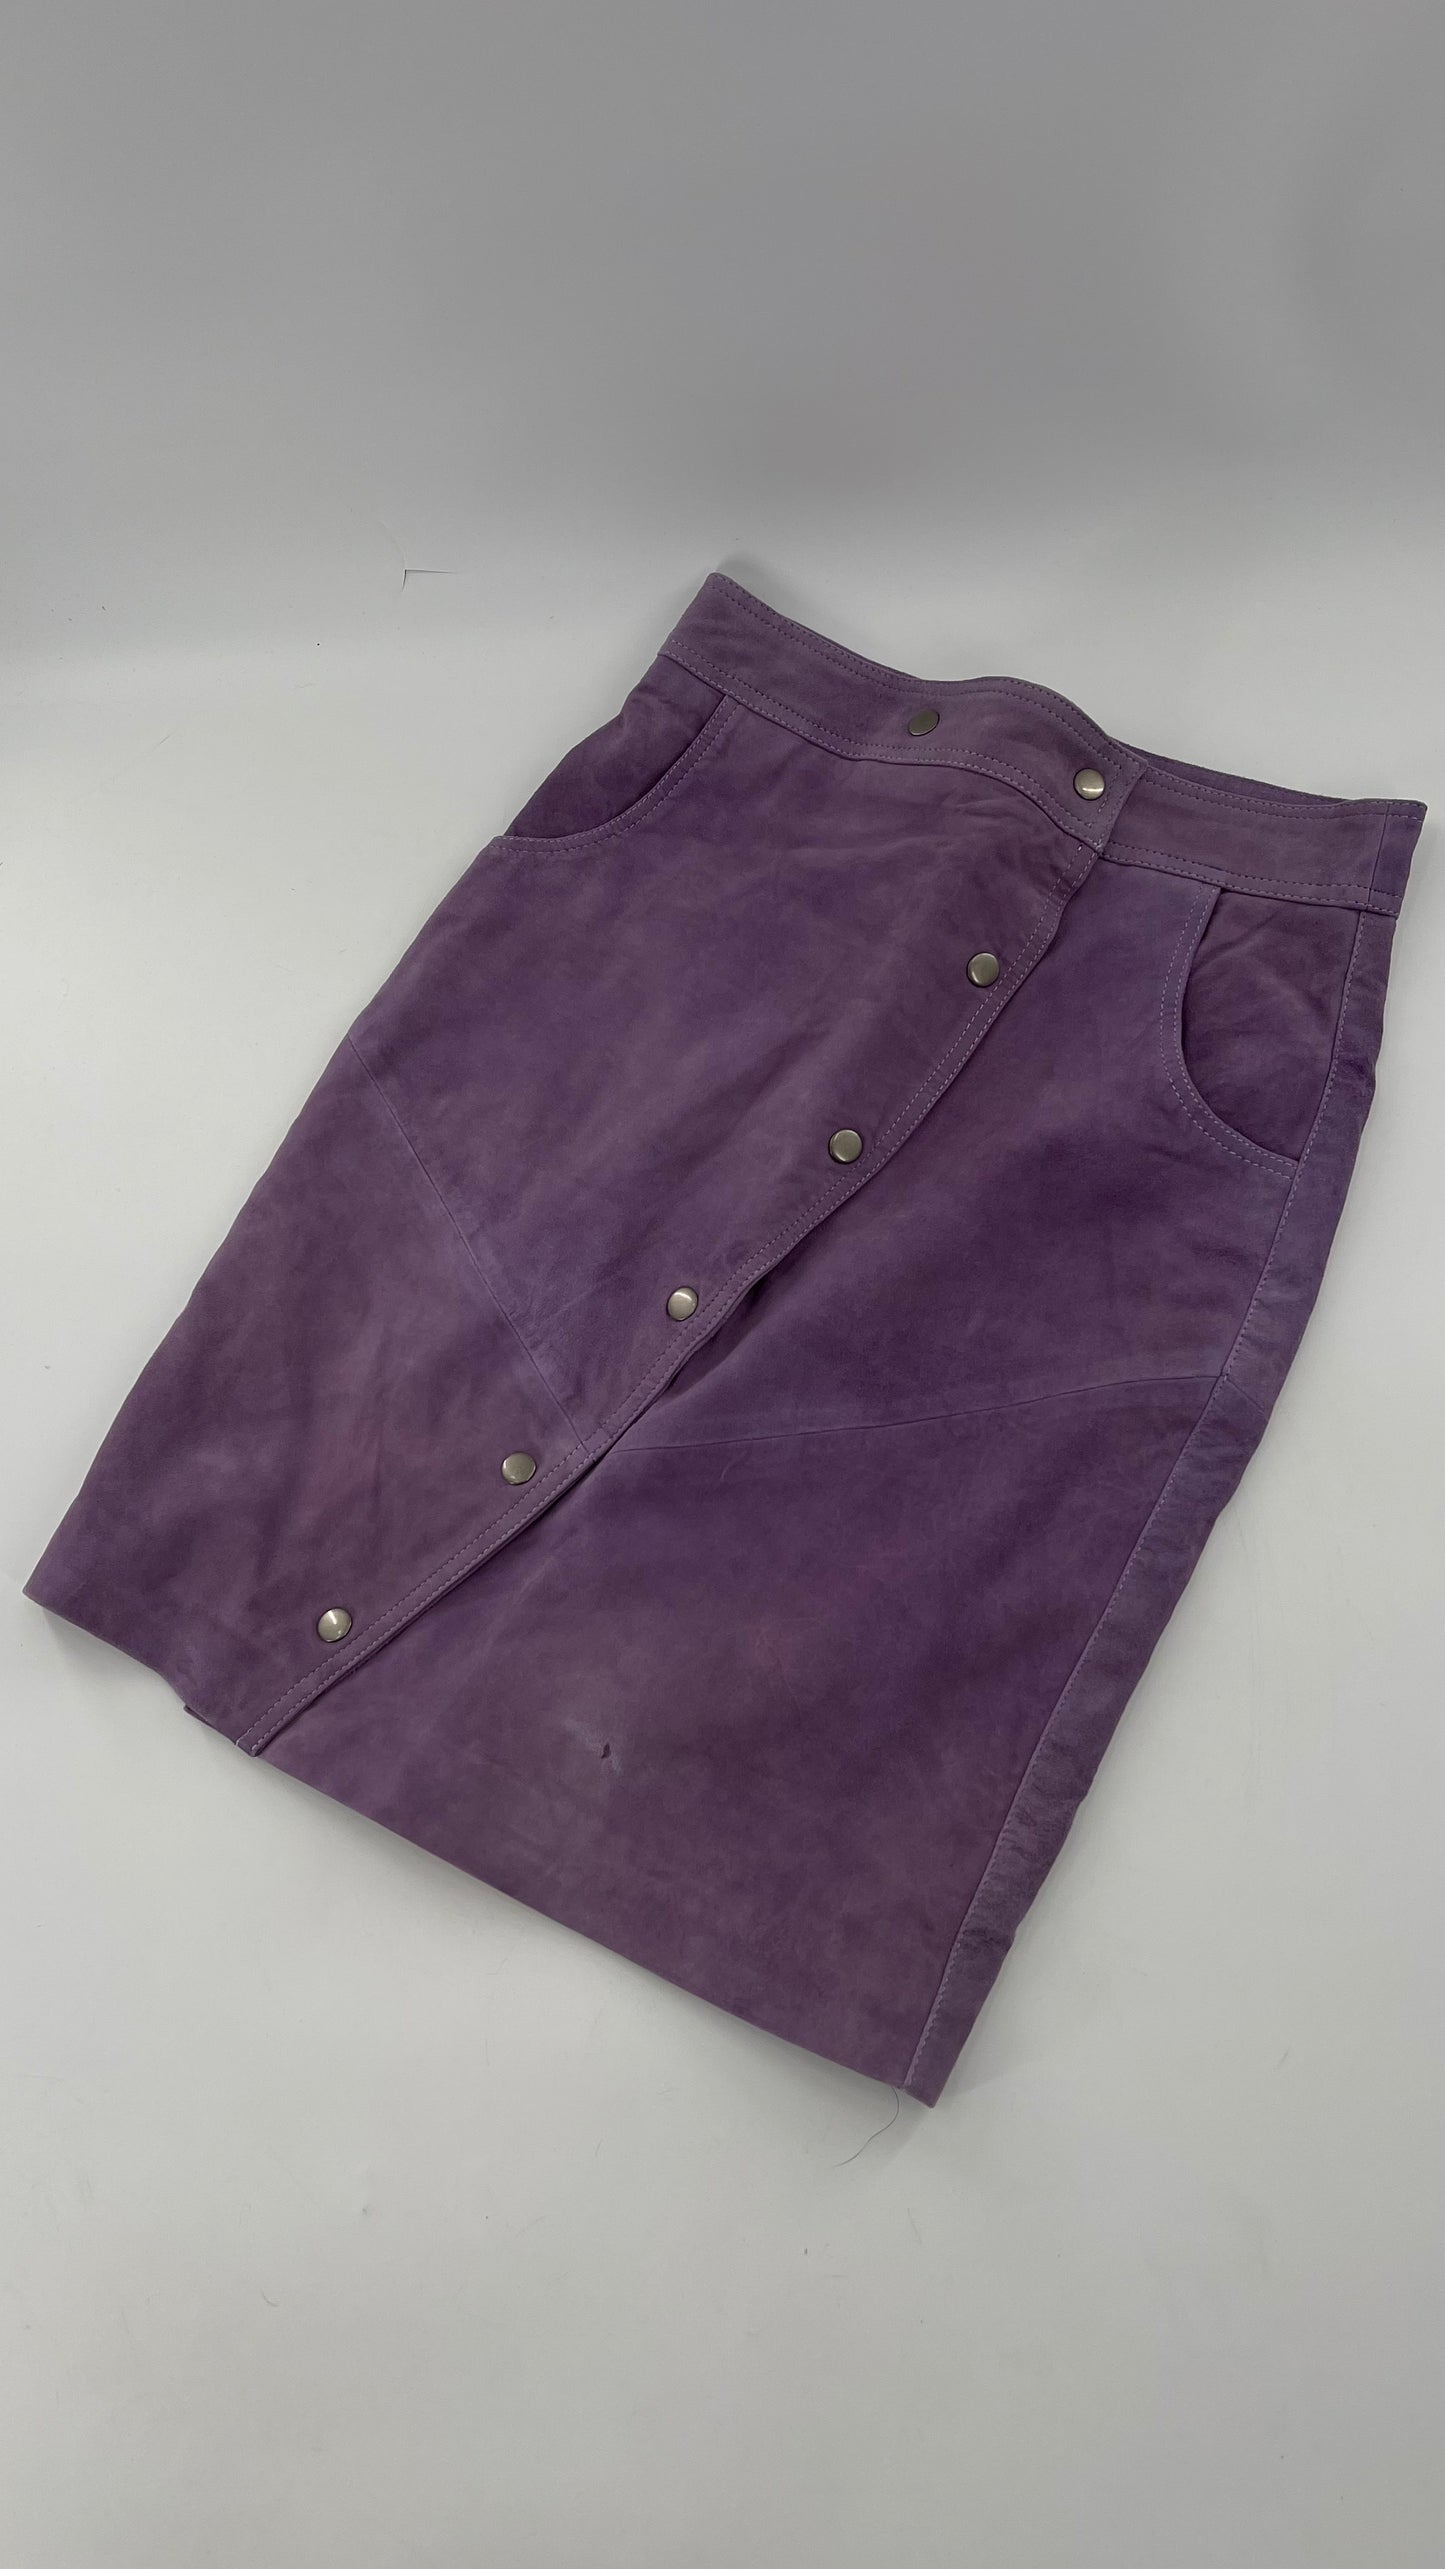 Free People Understated Purple Leather Knee Length Skirt (4)